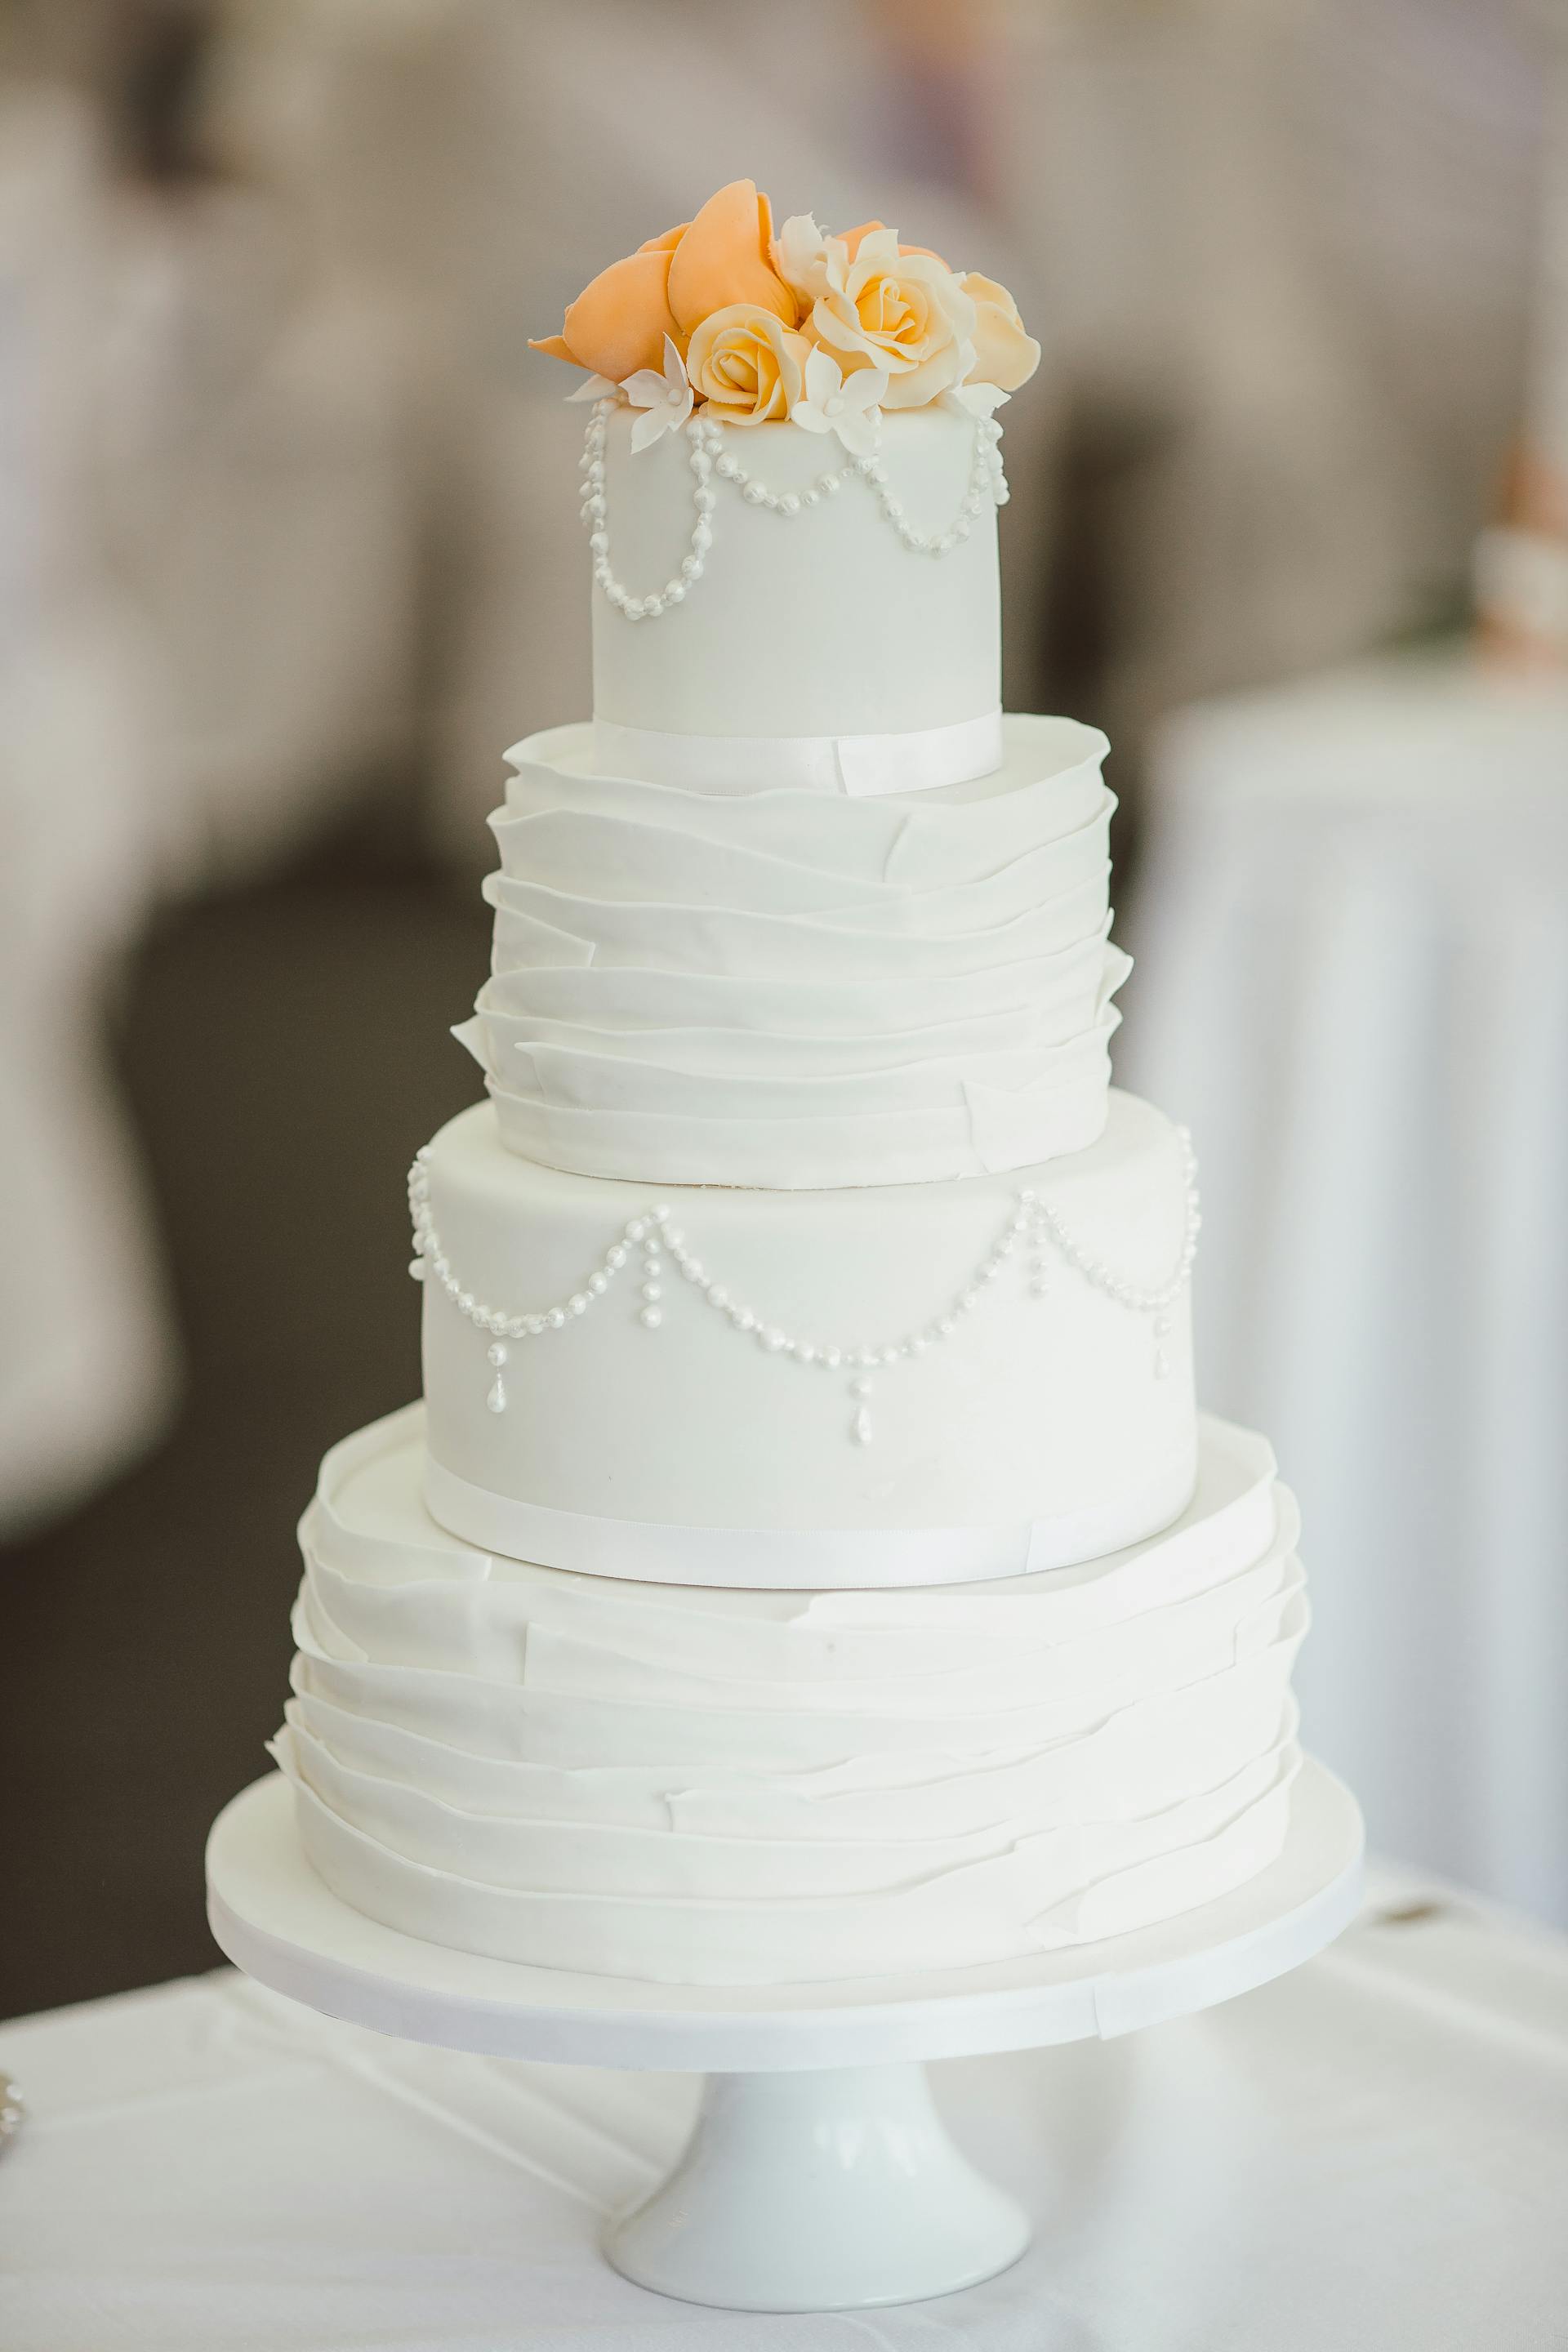 Un gâteau à quatre étages sur un support à gâteau | Source : Pexels